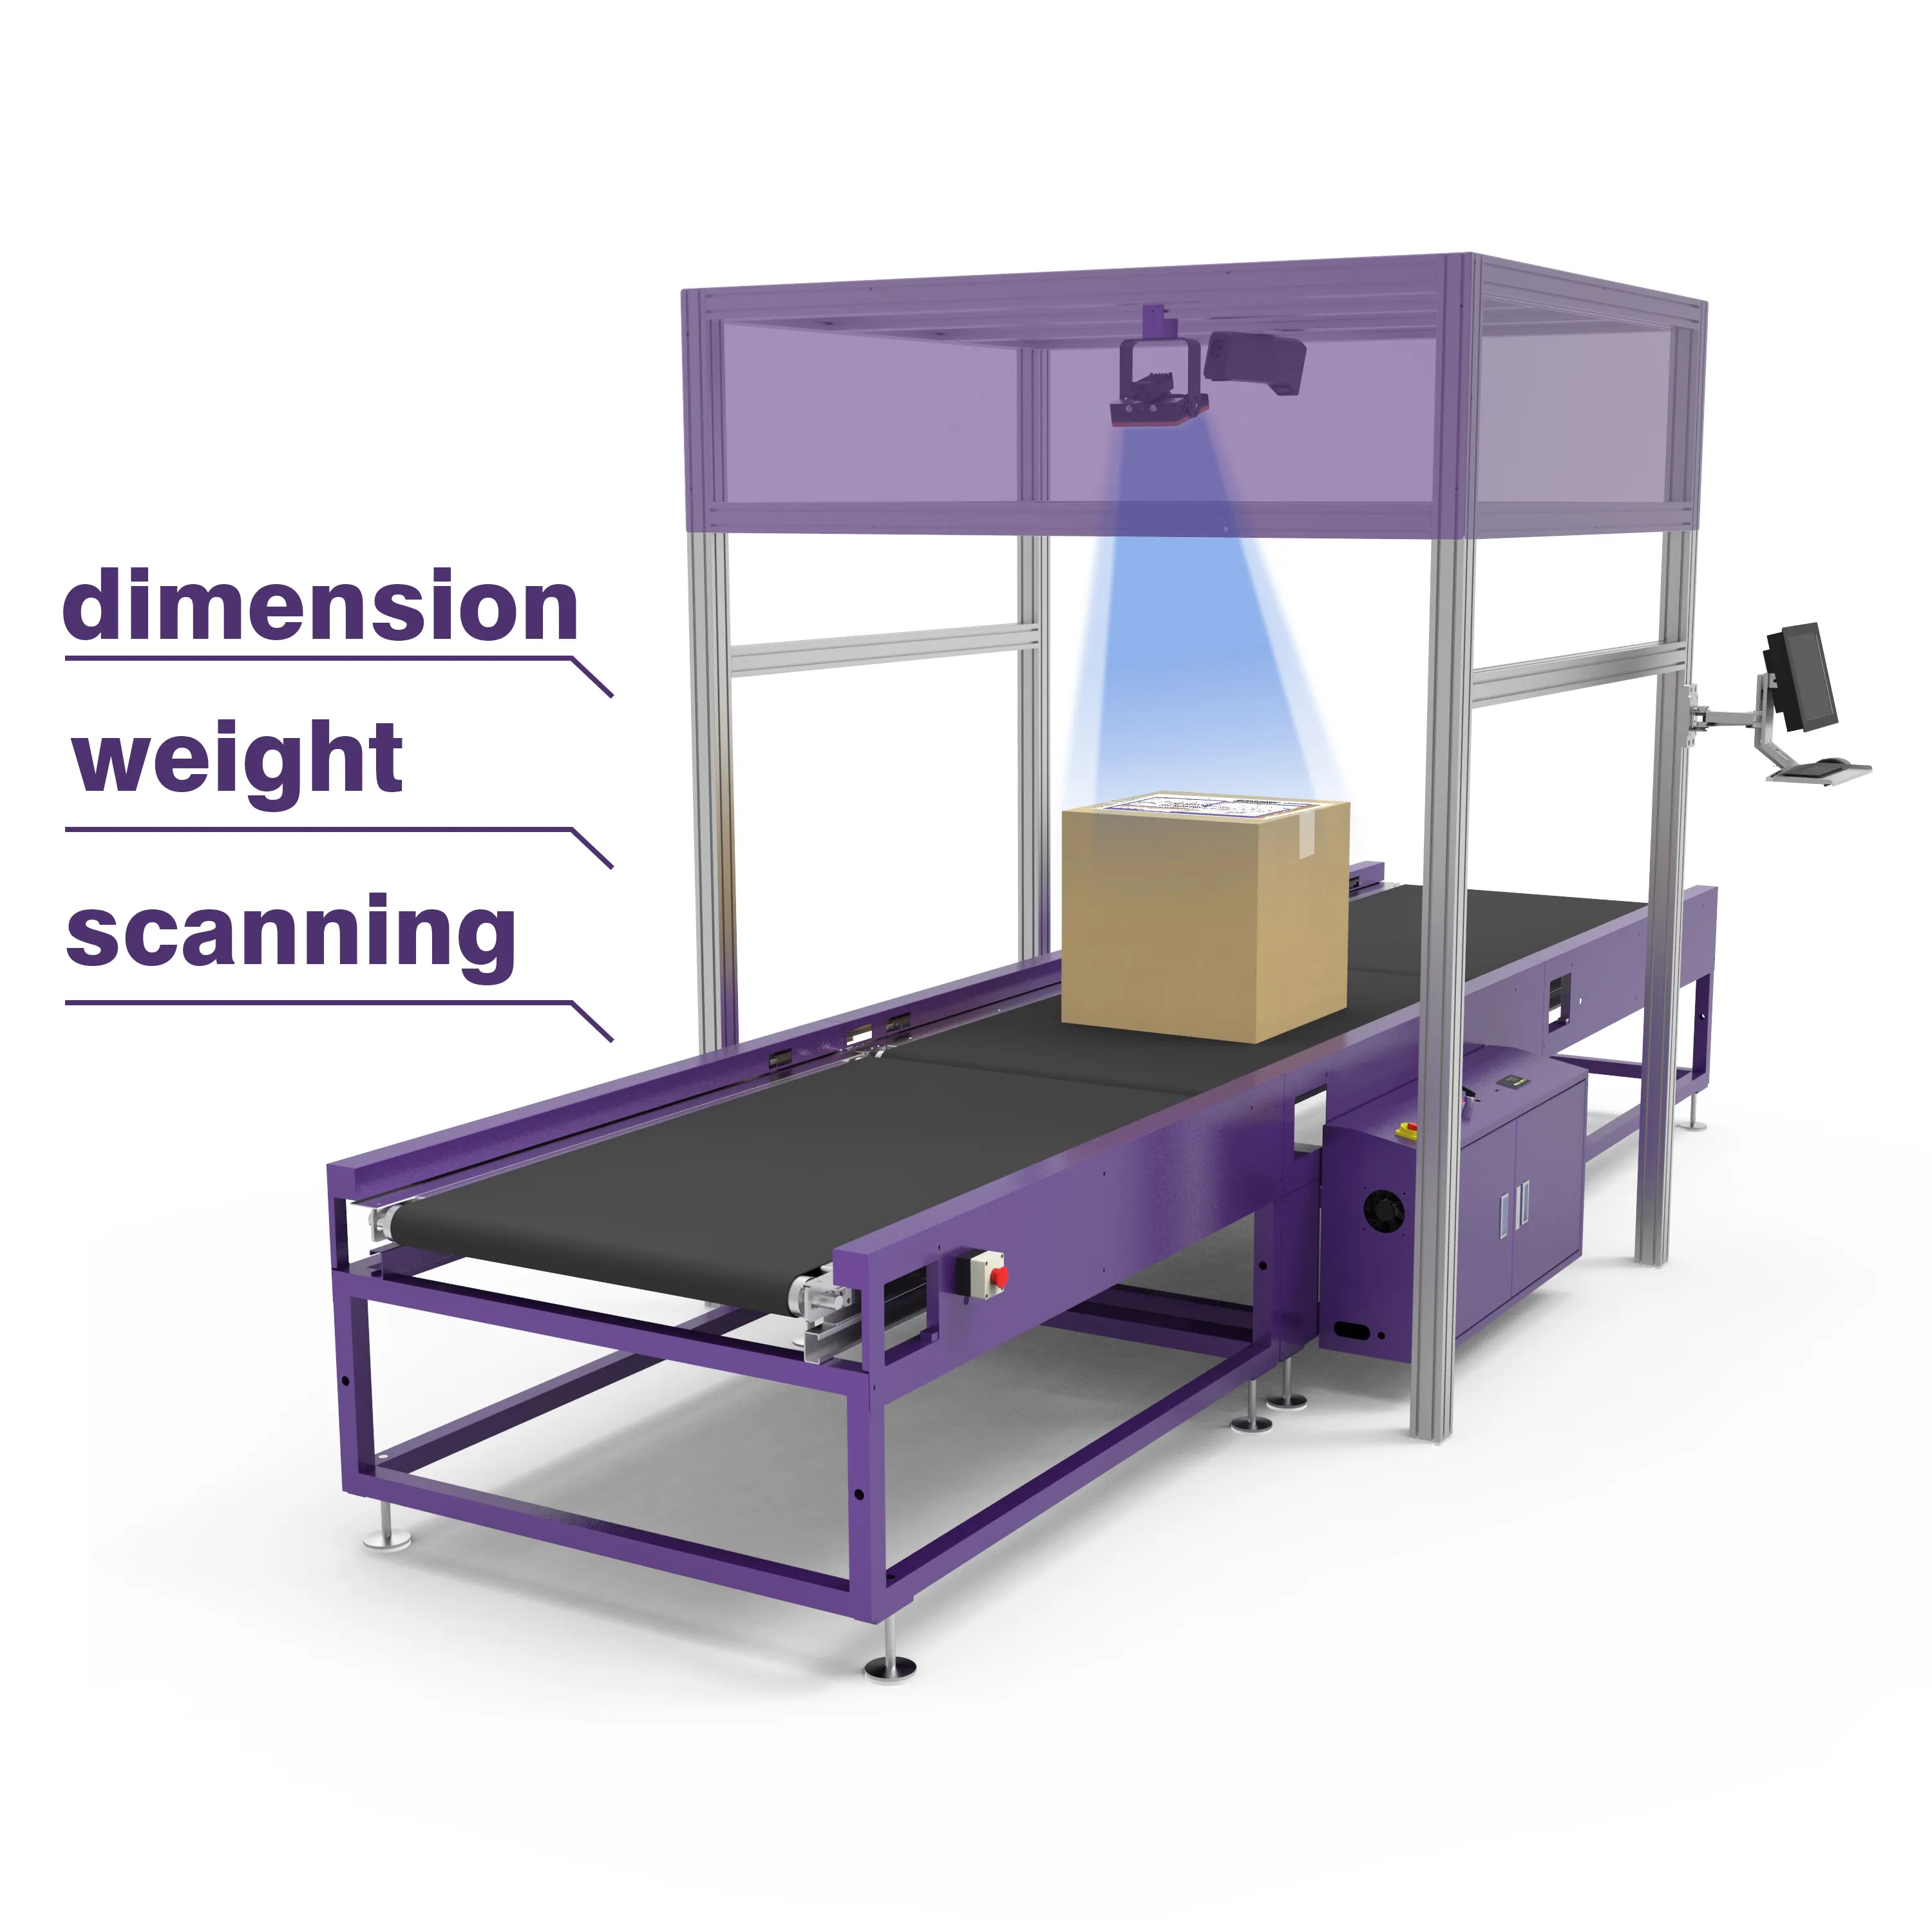 Gosunm 2022 DWS máquina para la entrega por correo por rueda de clasificador de 3 paracaídas automático entrega Postal sistema de clasificación peso dimensión